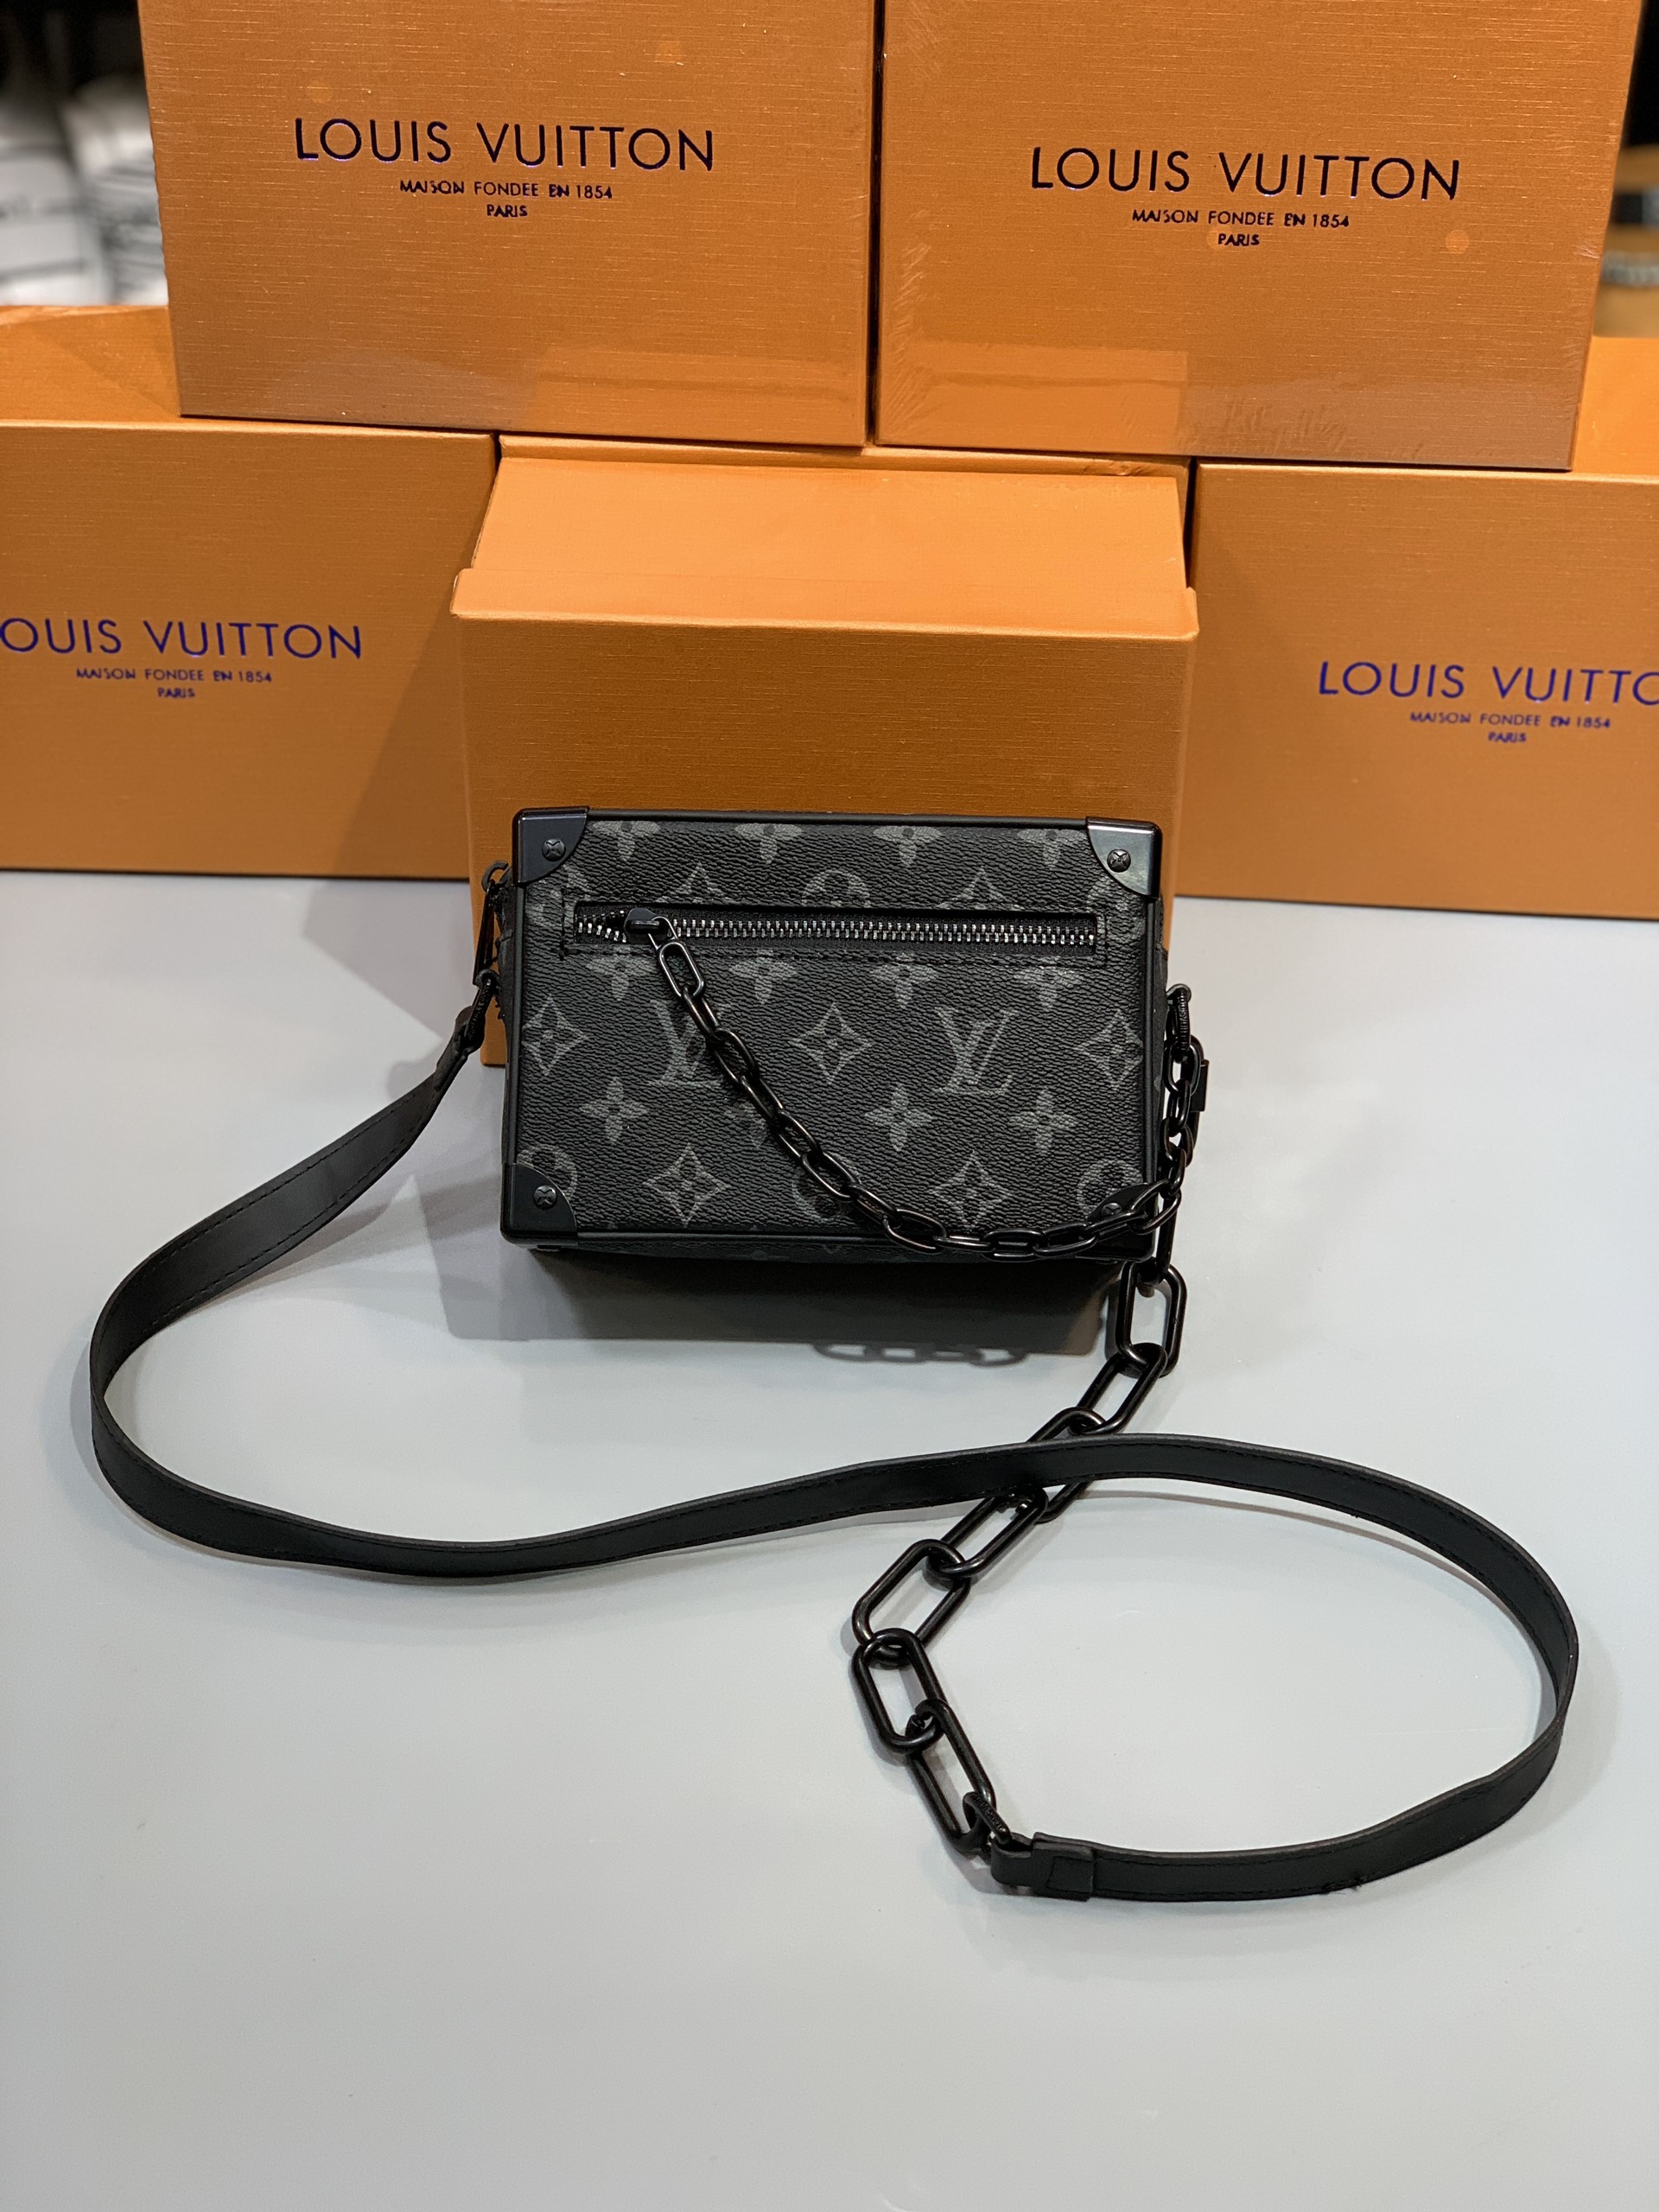 Túi xách hiệu Louis Vuitton thiết kế hộp trụ tròn sang trọng cổ điển   TXHLV011  97Luxury